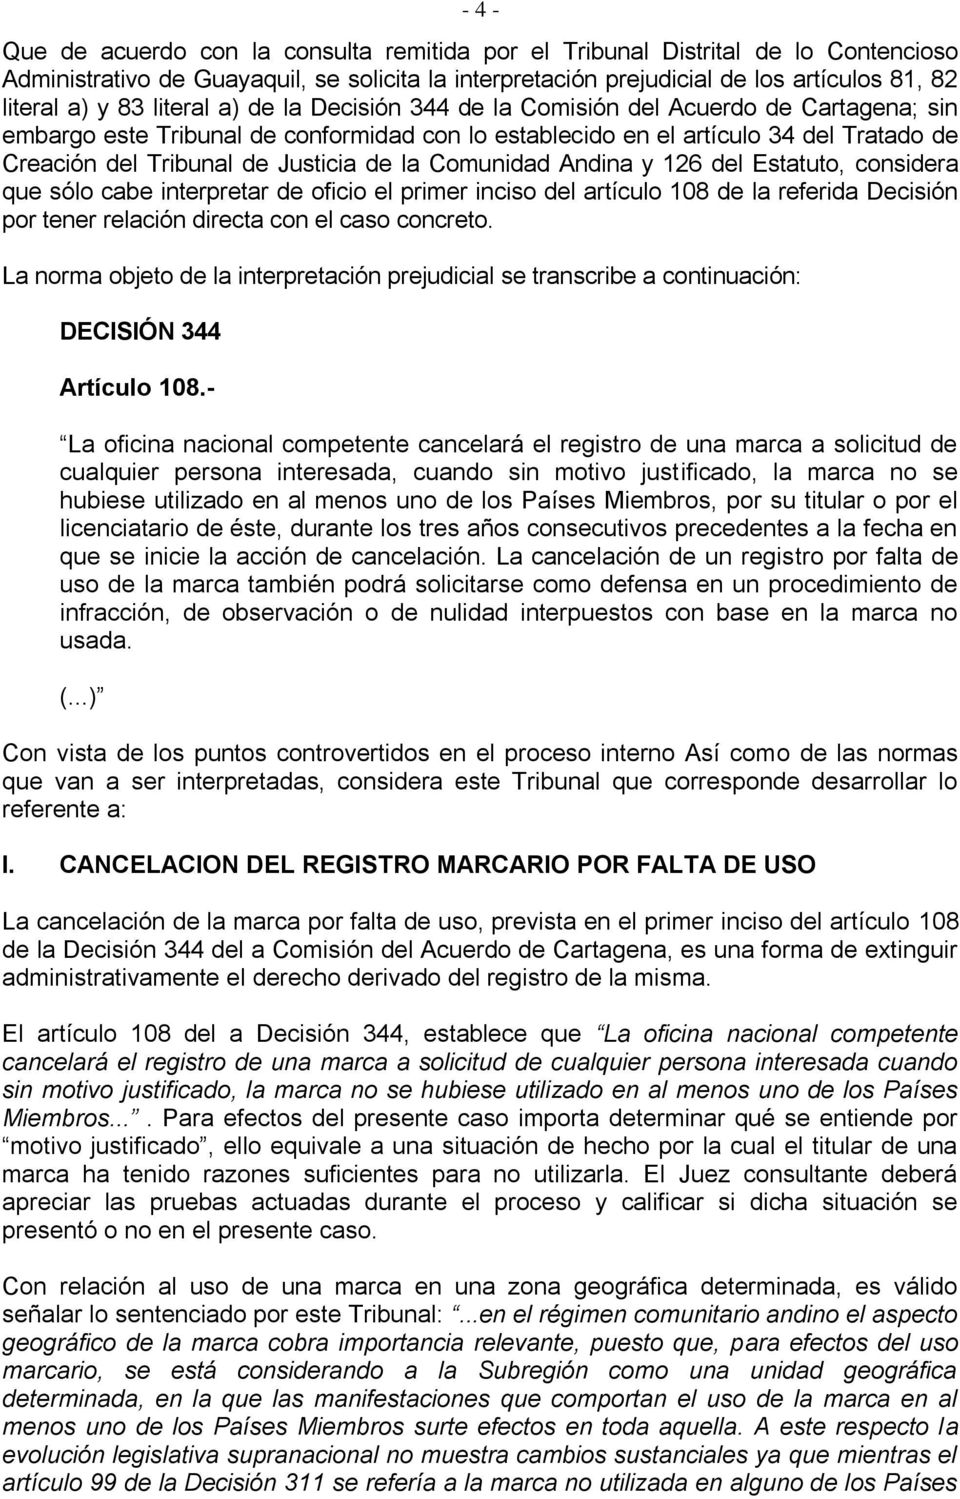 Justicia de la Comunidad Andina y 126 del Estatuto, considera que sólo cabe interpretar de oficio el primer inciso del artículo 108 de la referida Decisión por tener relación directa con el caso